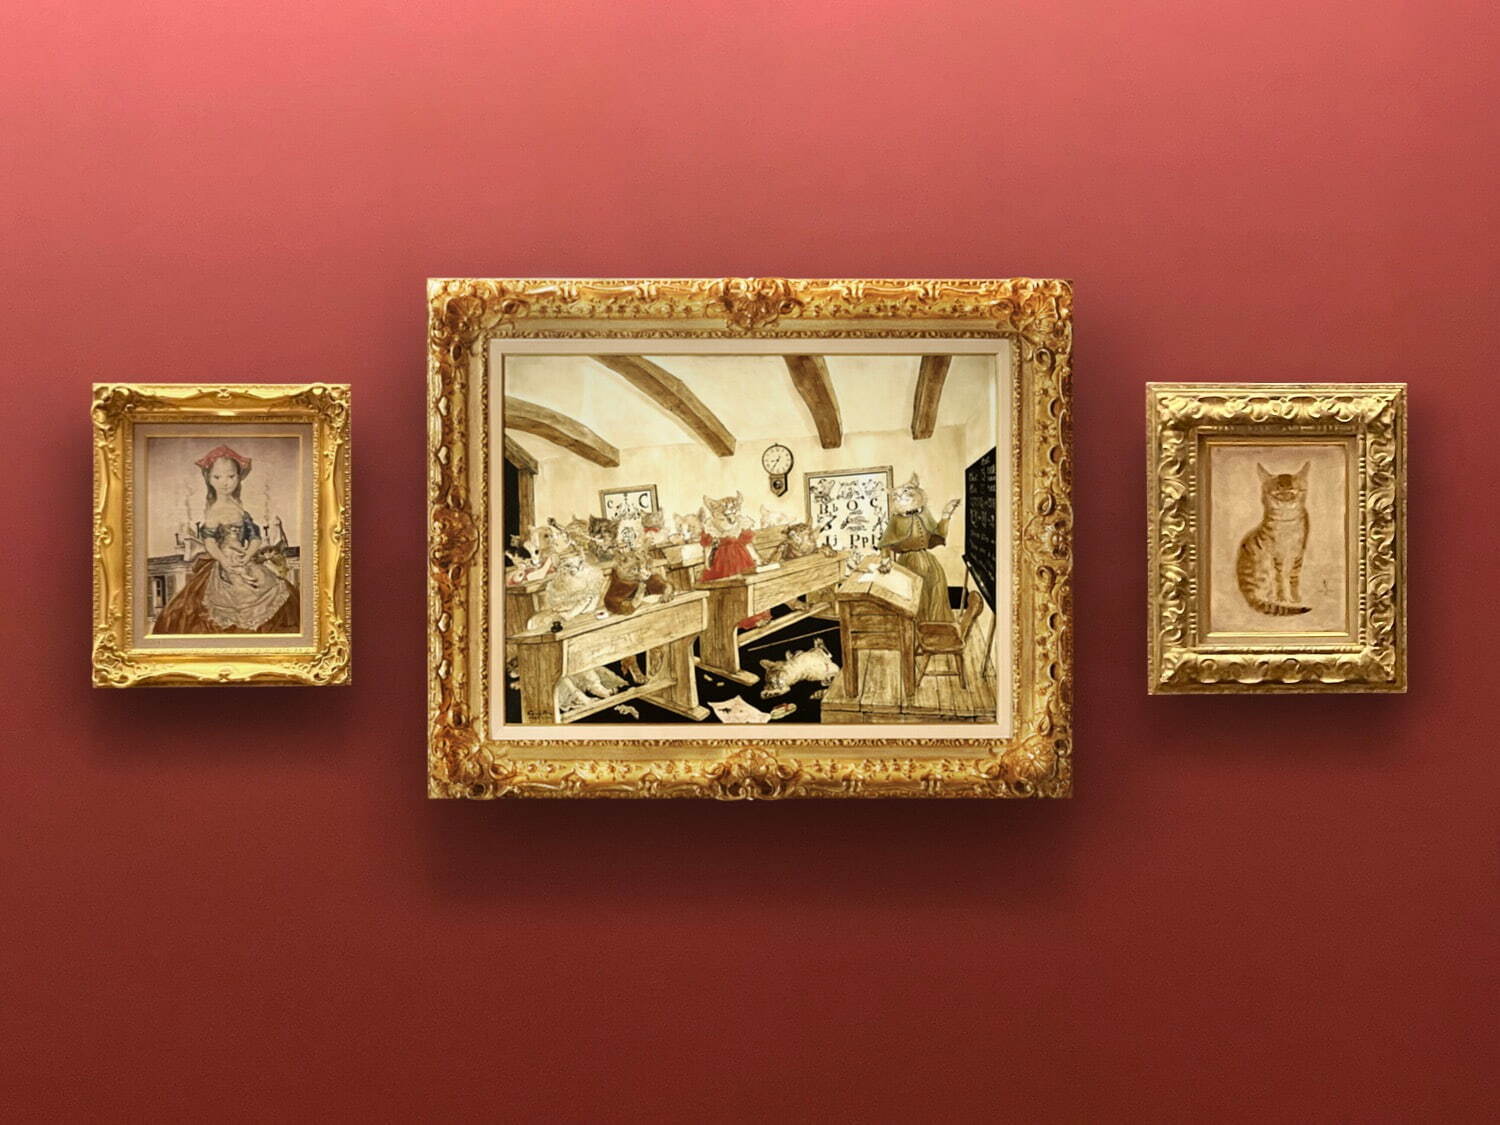 軽井沢安東美術館 展示室5
藤田嗣治 (中央) 《猫の教室》 1949年 油彩・キャンバス
(左) 《パリの屋根の前の少女と猫》 1955年 油彩・キャンバス
(右) 《正面を向く猫》 1930年 油彩・キャンバス